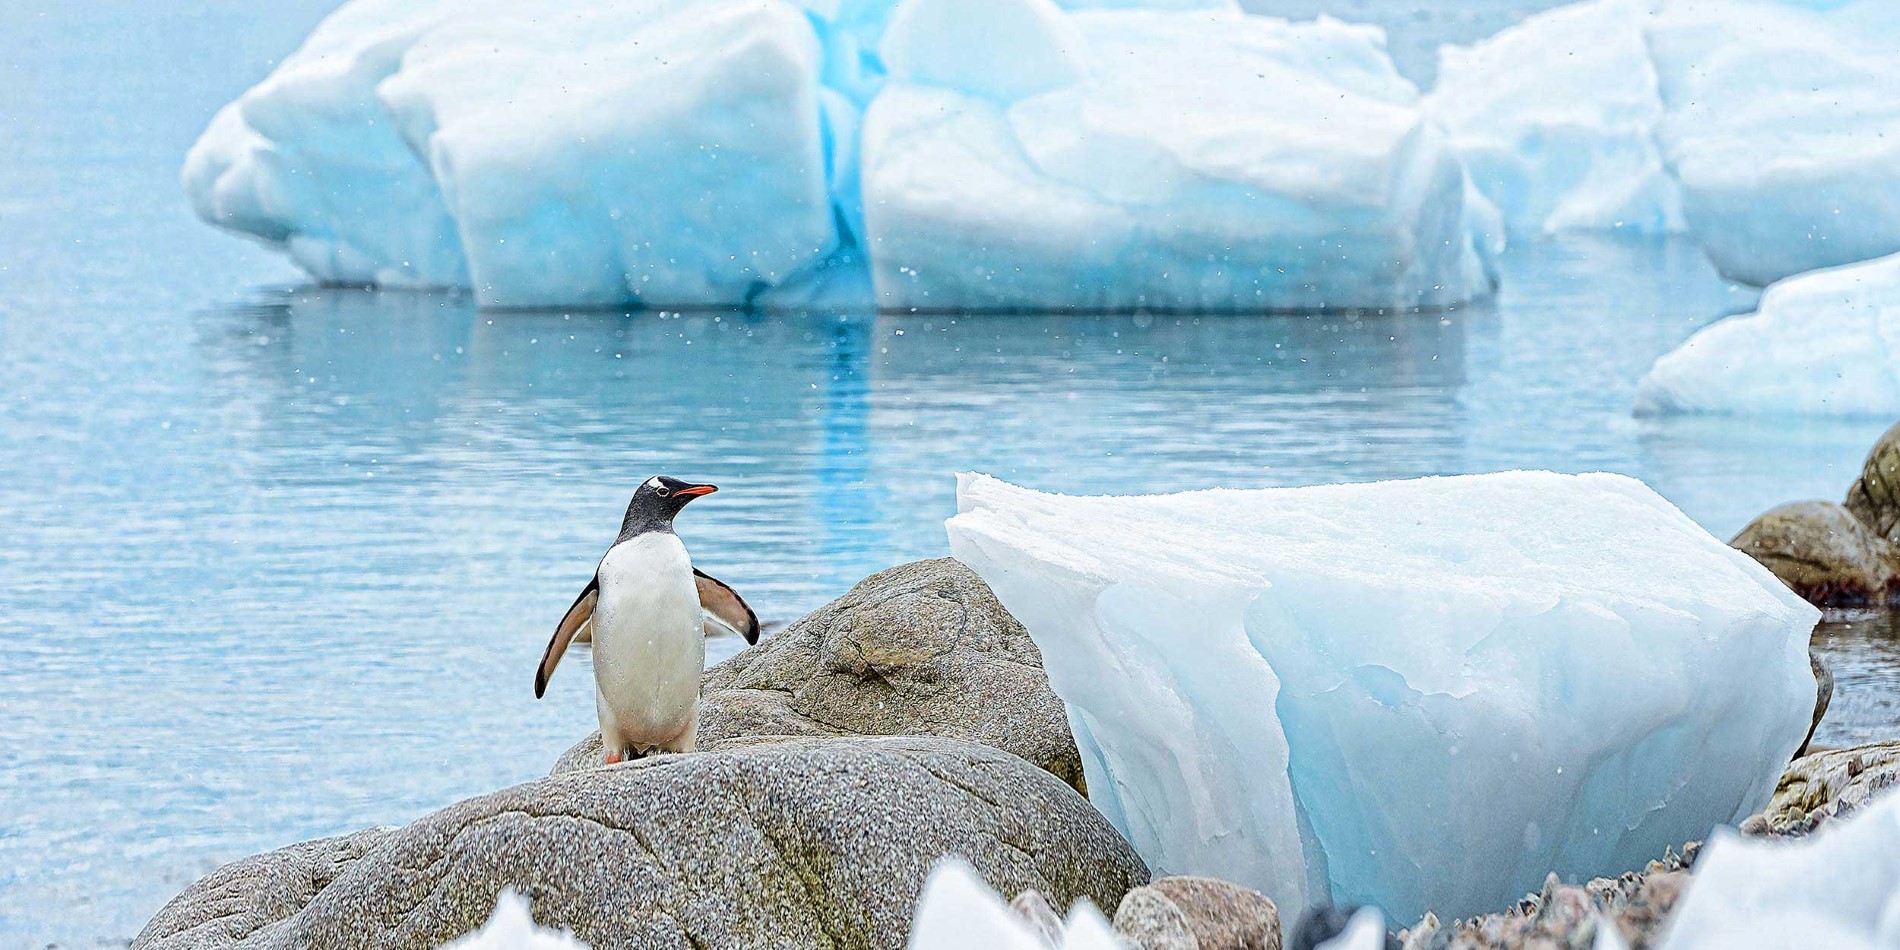 Gentoo penguin on a rock